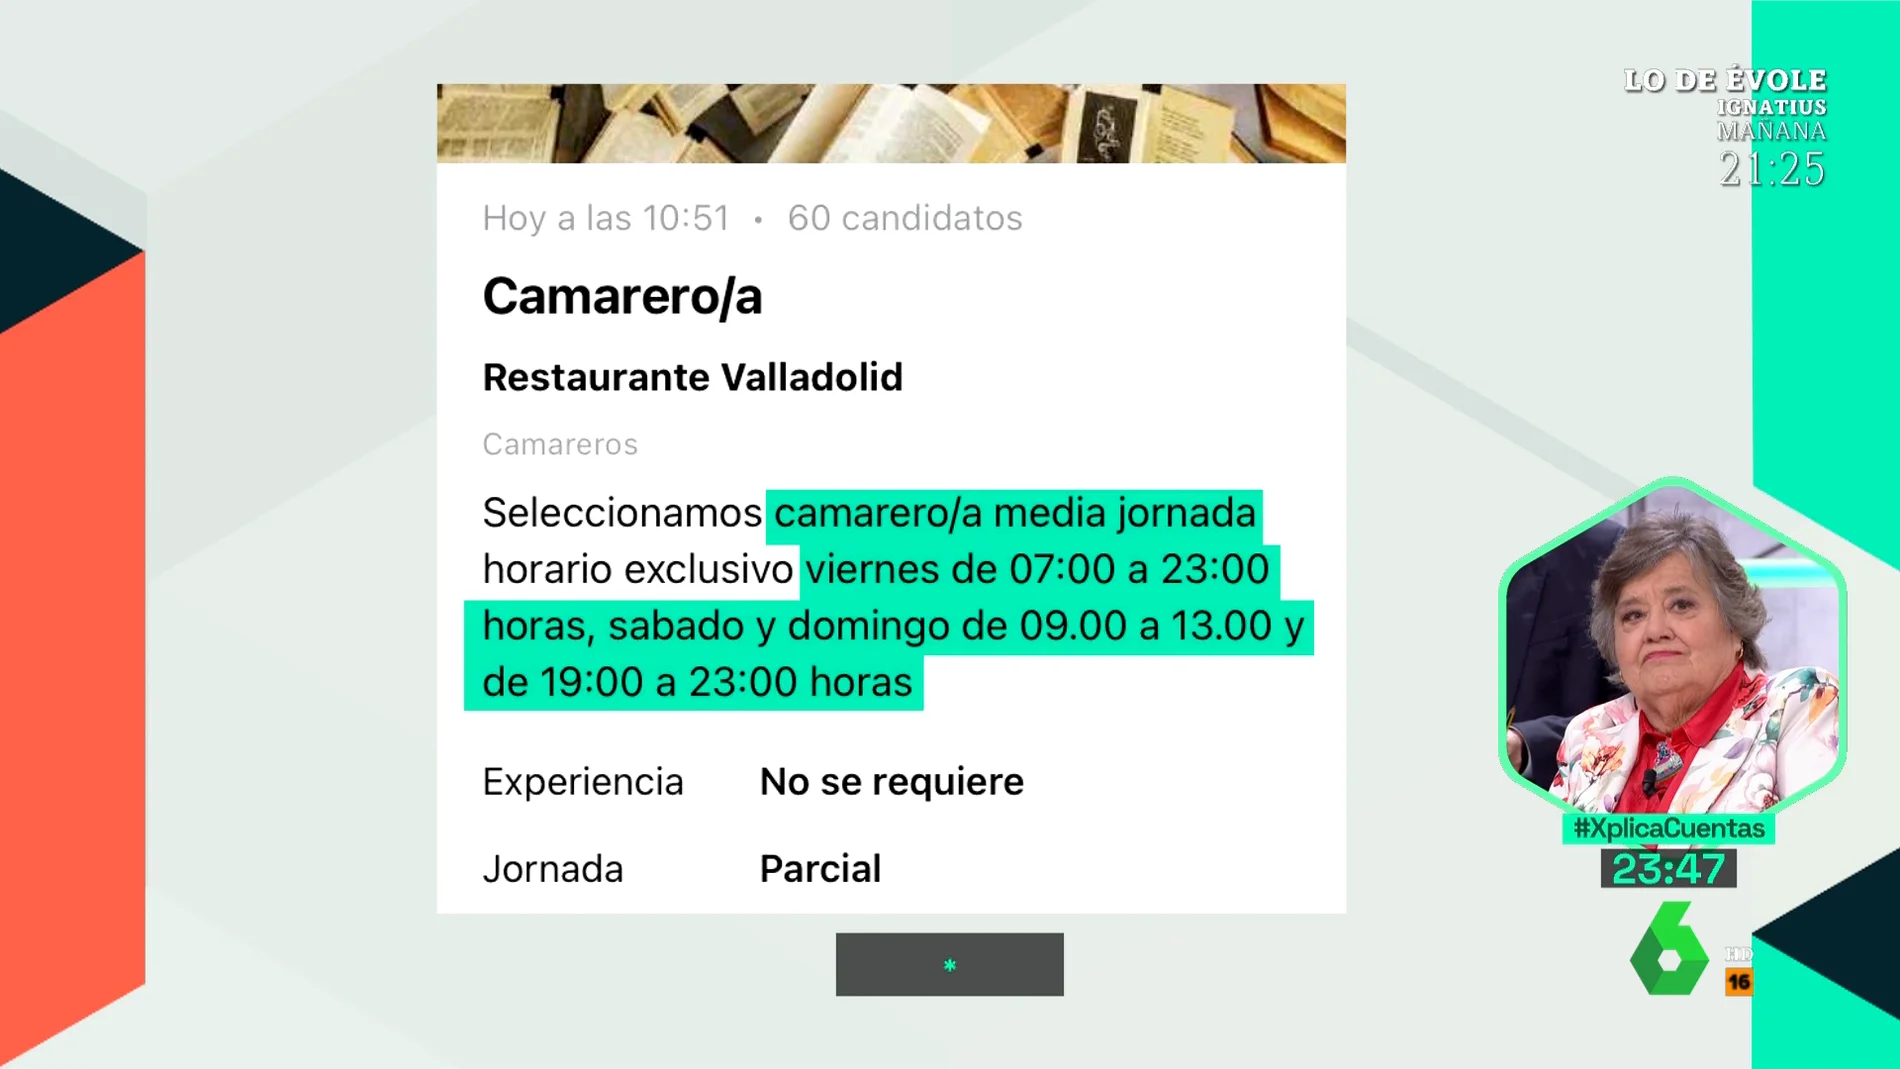 Empleo a "media jornada", de 07 a 23 horas: la infame oferta de trabajo para un camarero en Valladolid